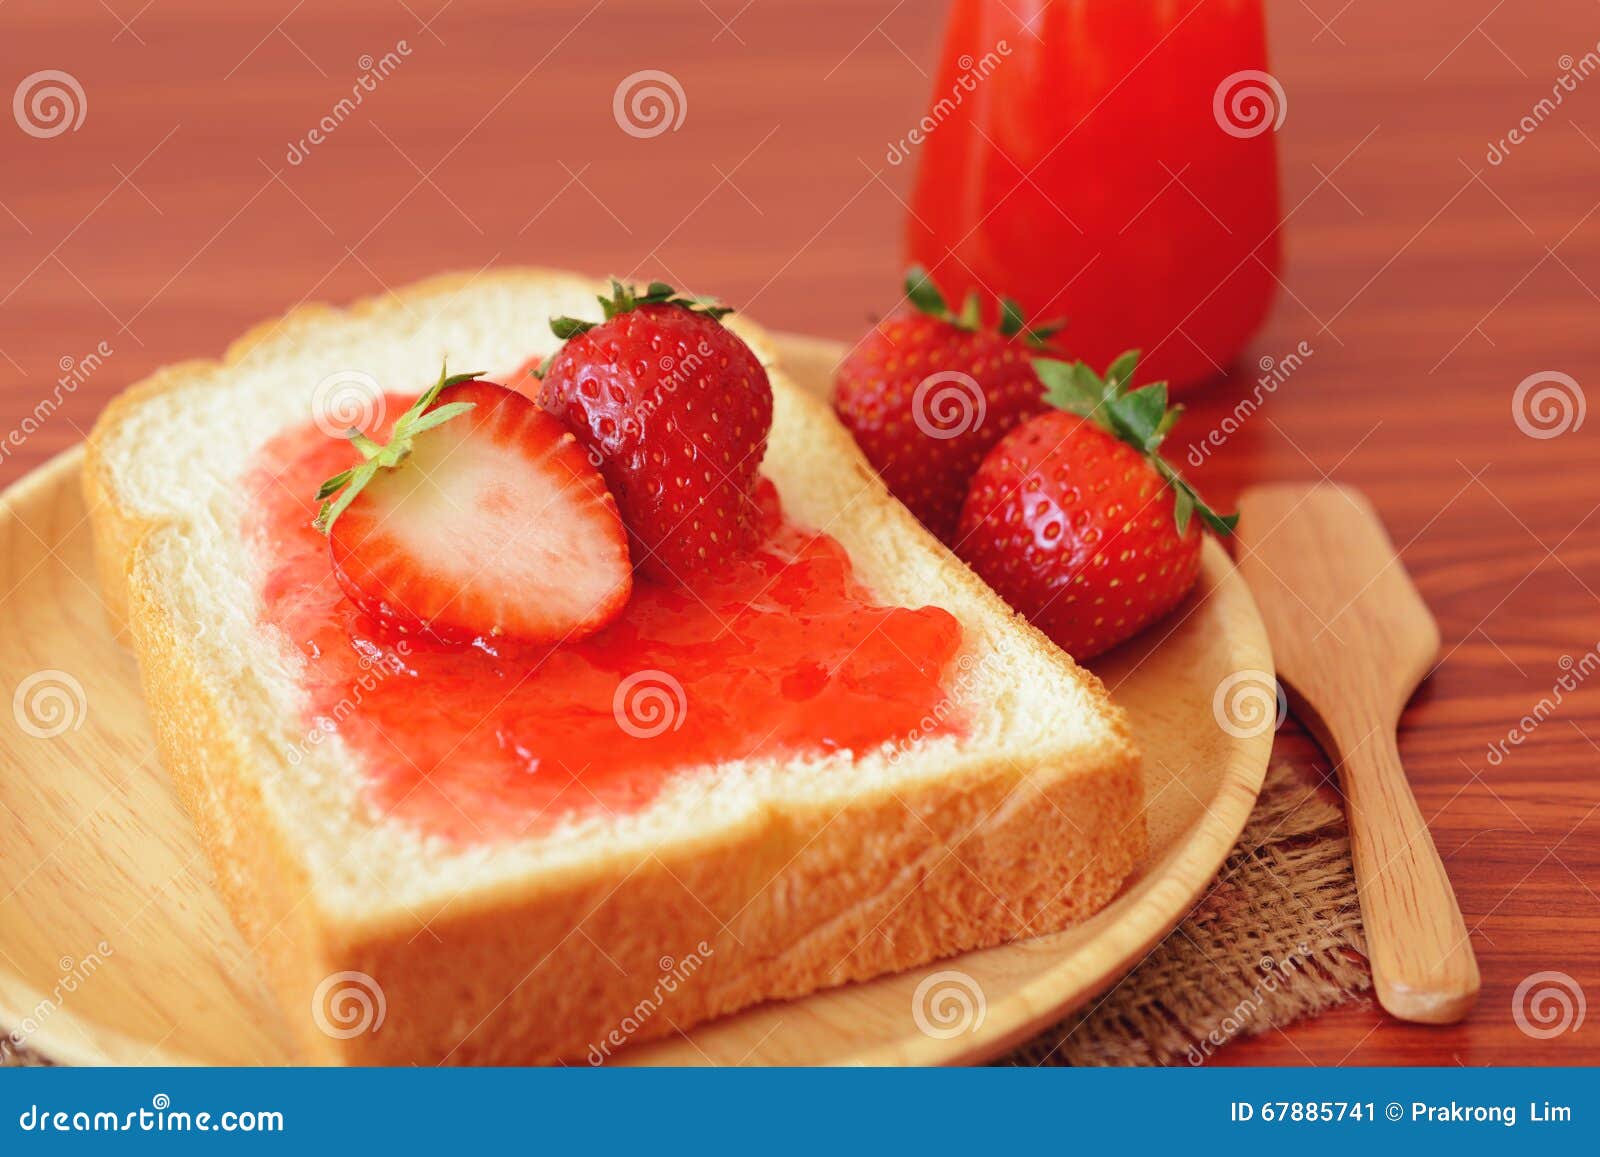 草莓奶油面包的做法_草莓奶油面包怎么做_草莓奶油面包的家常做法_匿名厨友1271430068031【心食谱】